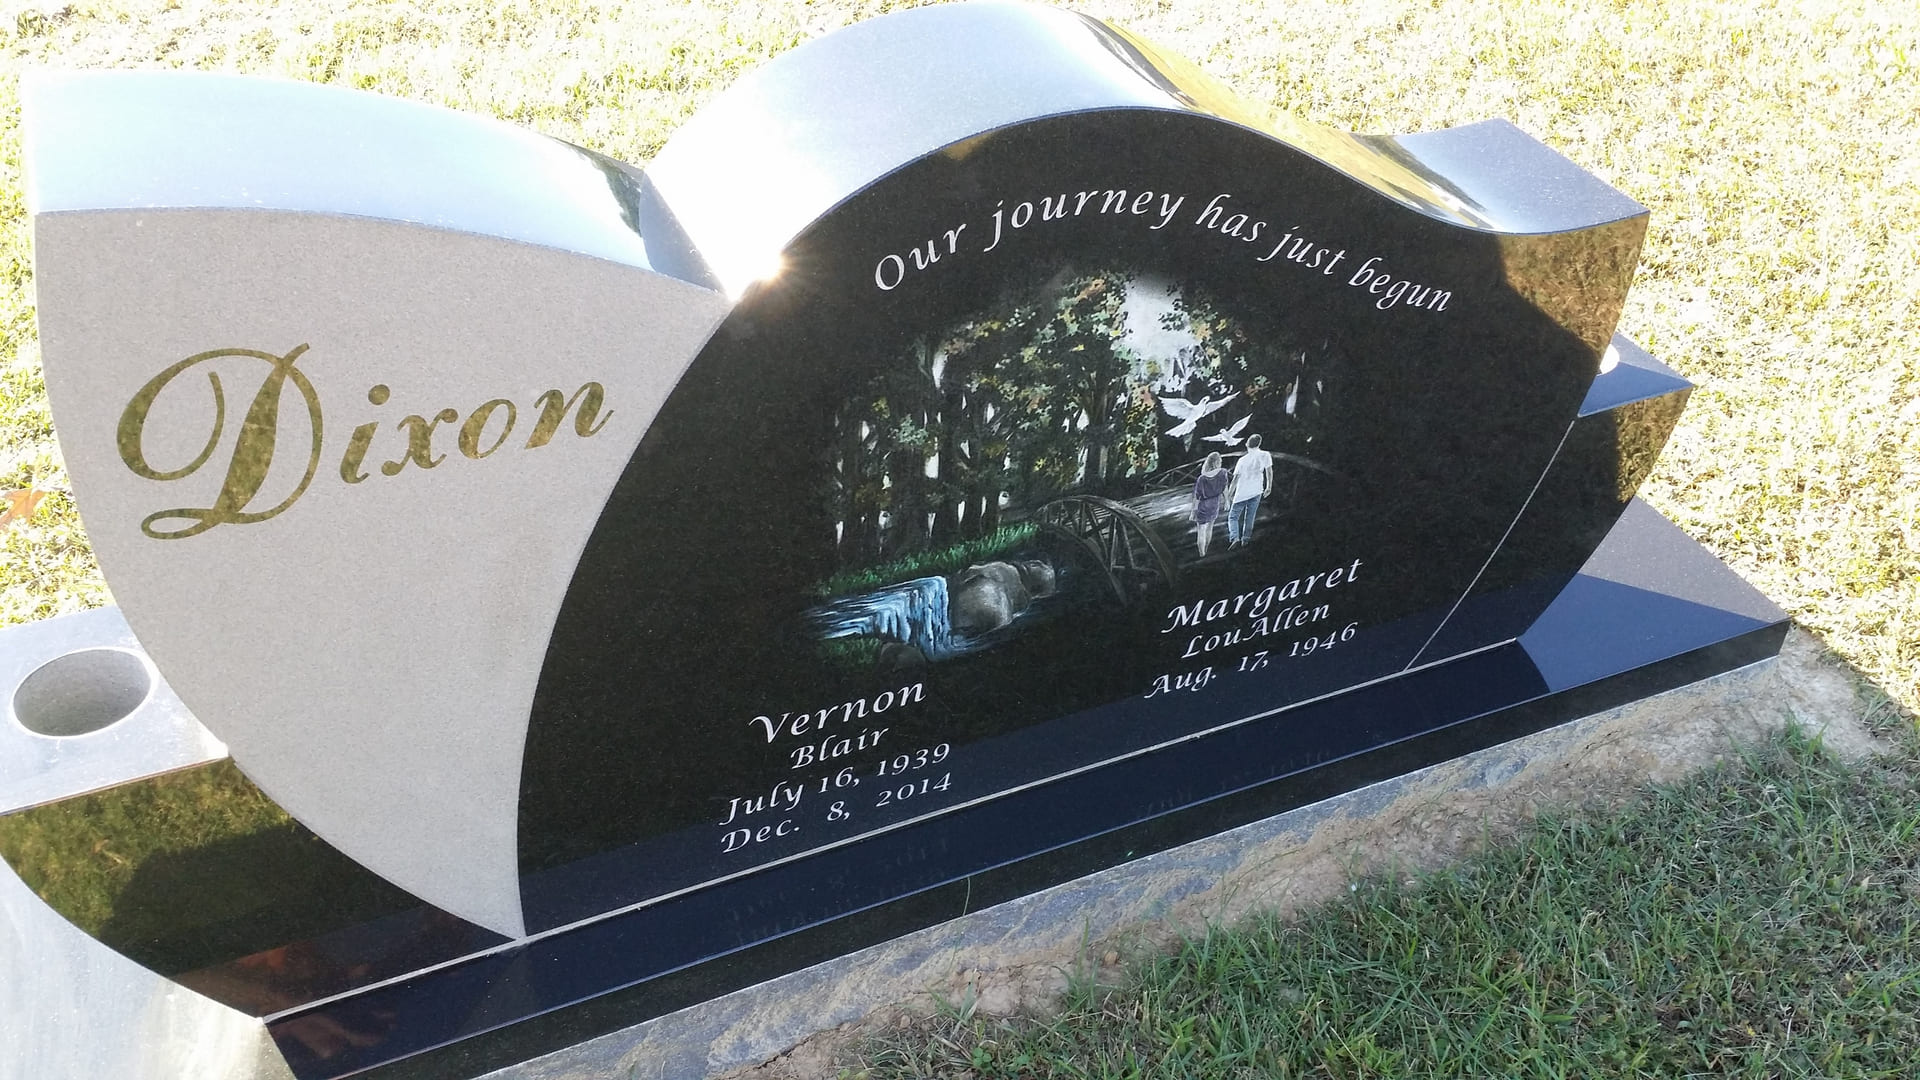 A memorial slab for Vernon Blair and Margaret Louallen